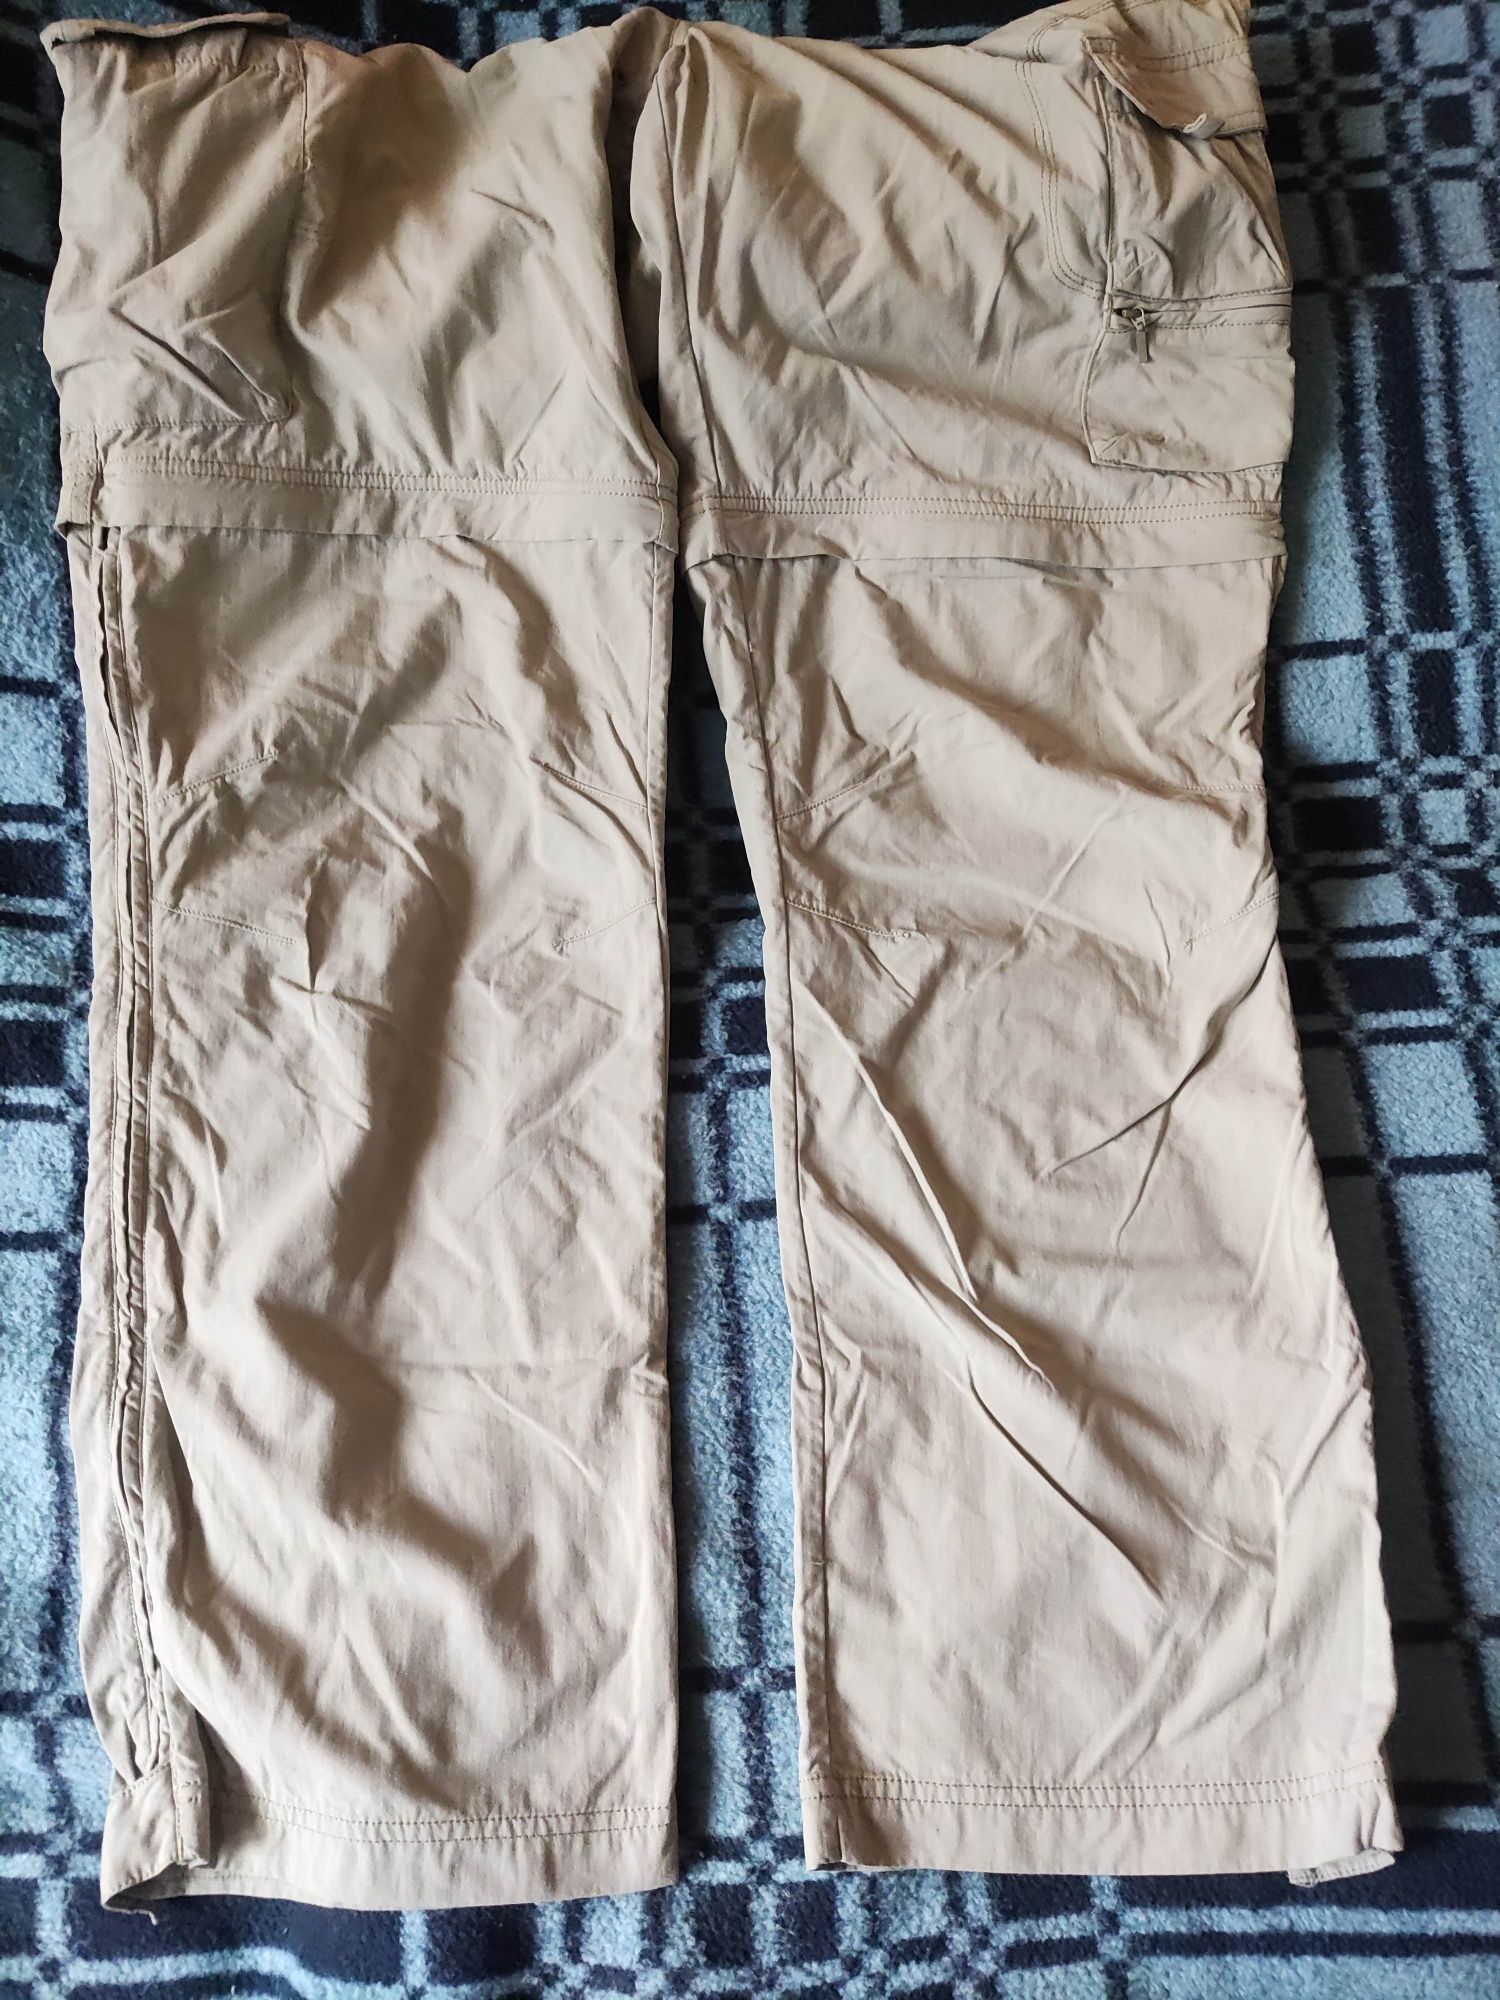 Spodnie Trekkingowe Bojówki Salewa odpinane nogawki

Rozmiar XXXL

Sta